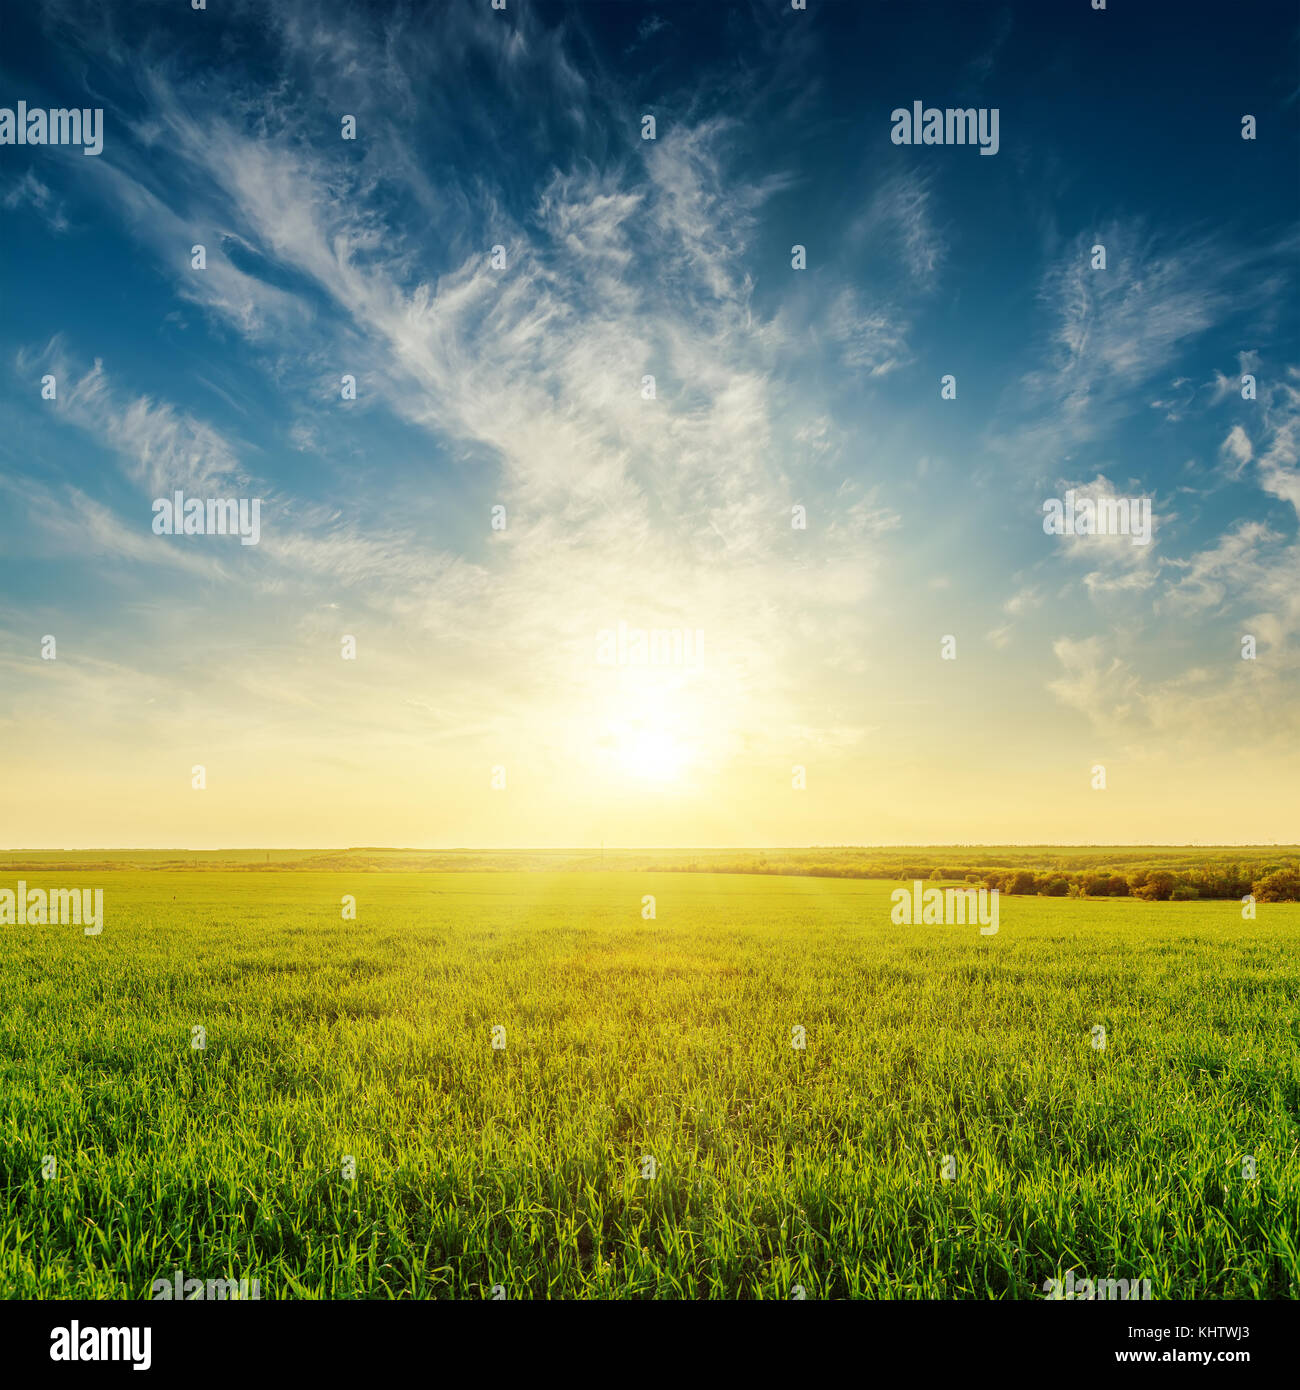 Golden sunset dans ciel nuageux sur green grass field Banque D'Images